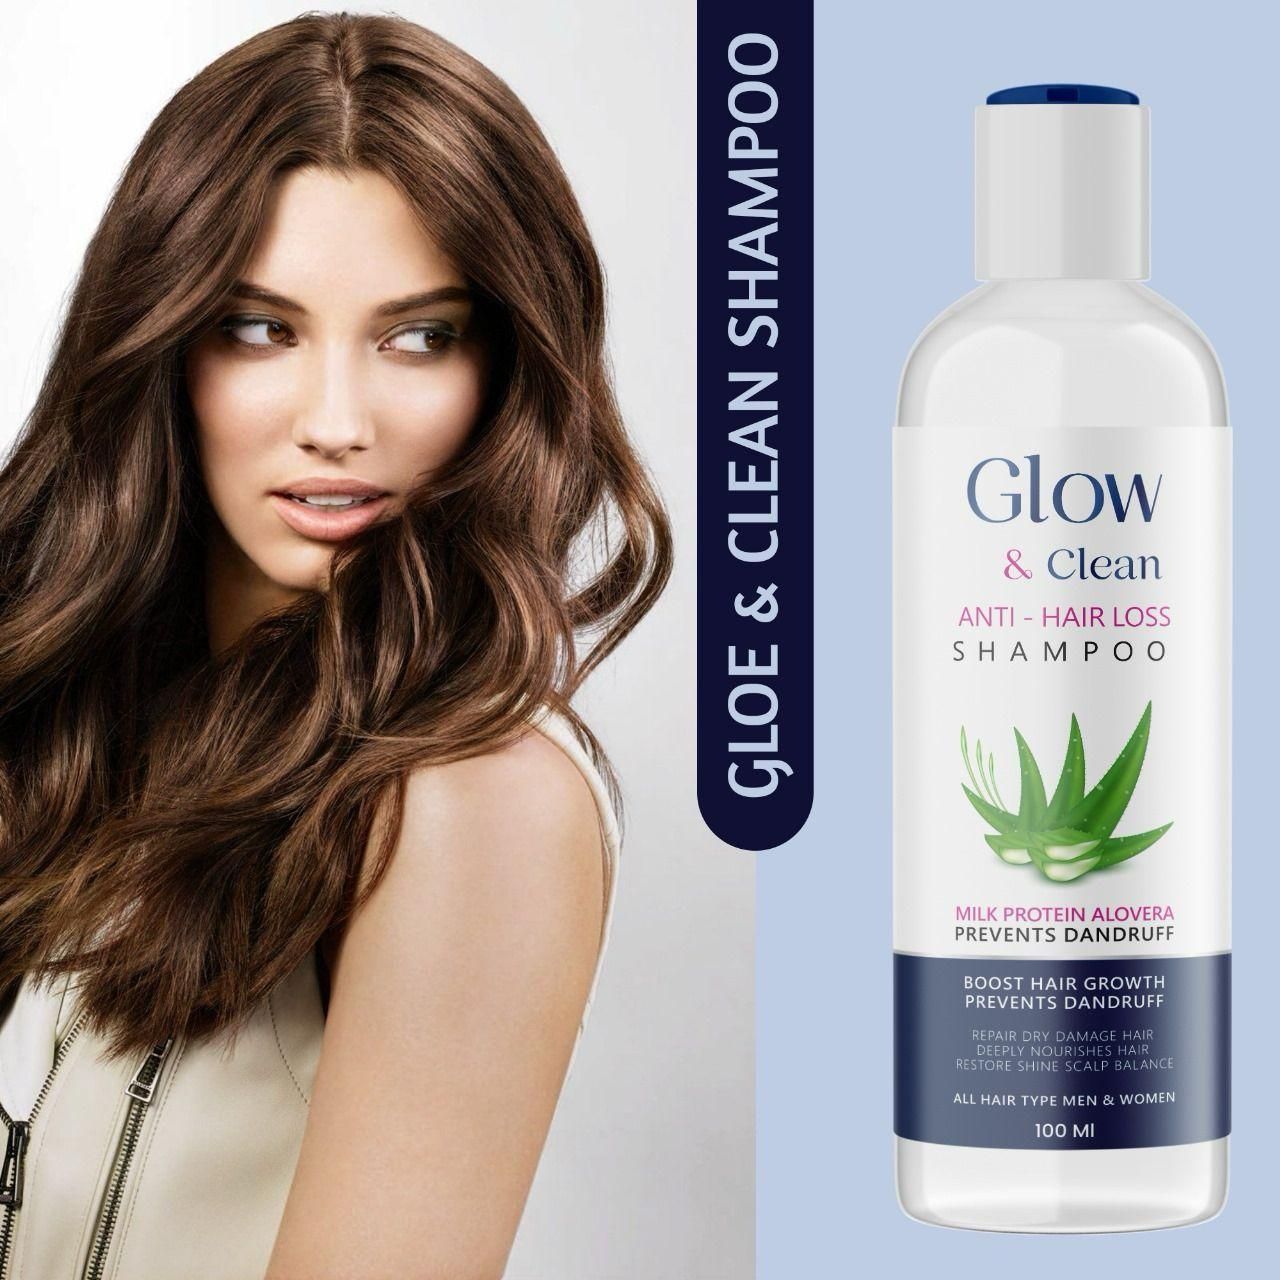 GLOW & Clean Anti-Hair Loss Shampoo (100ml)